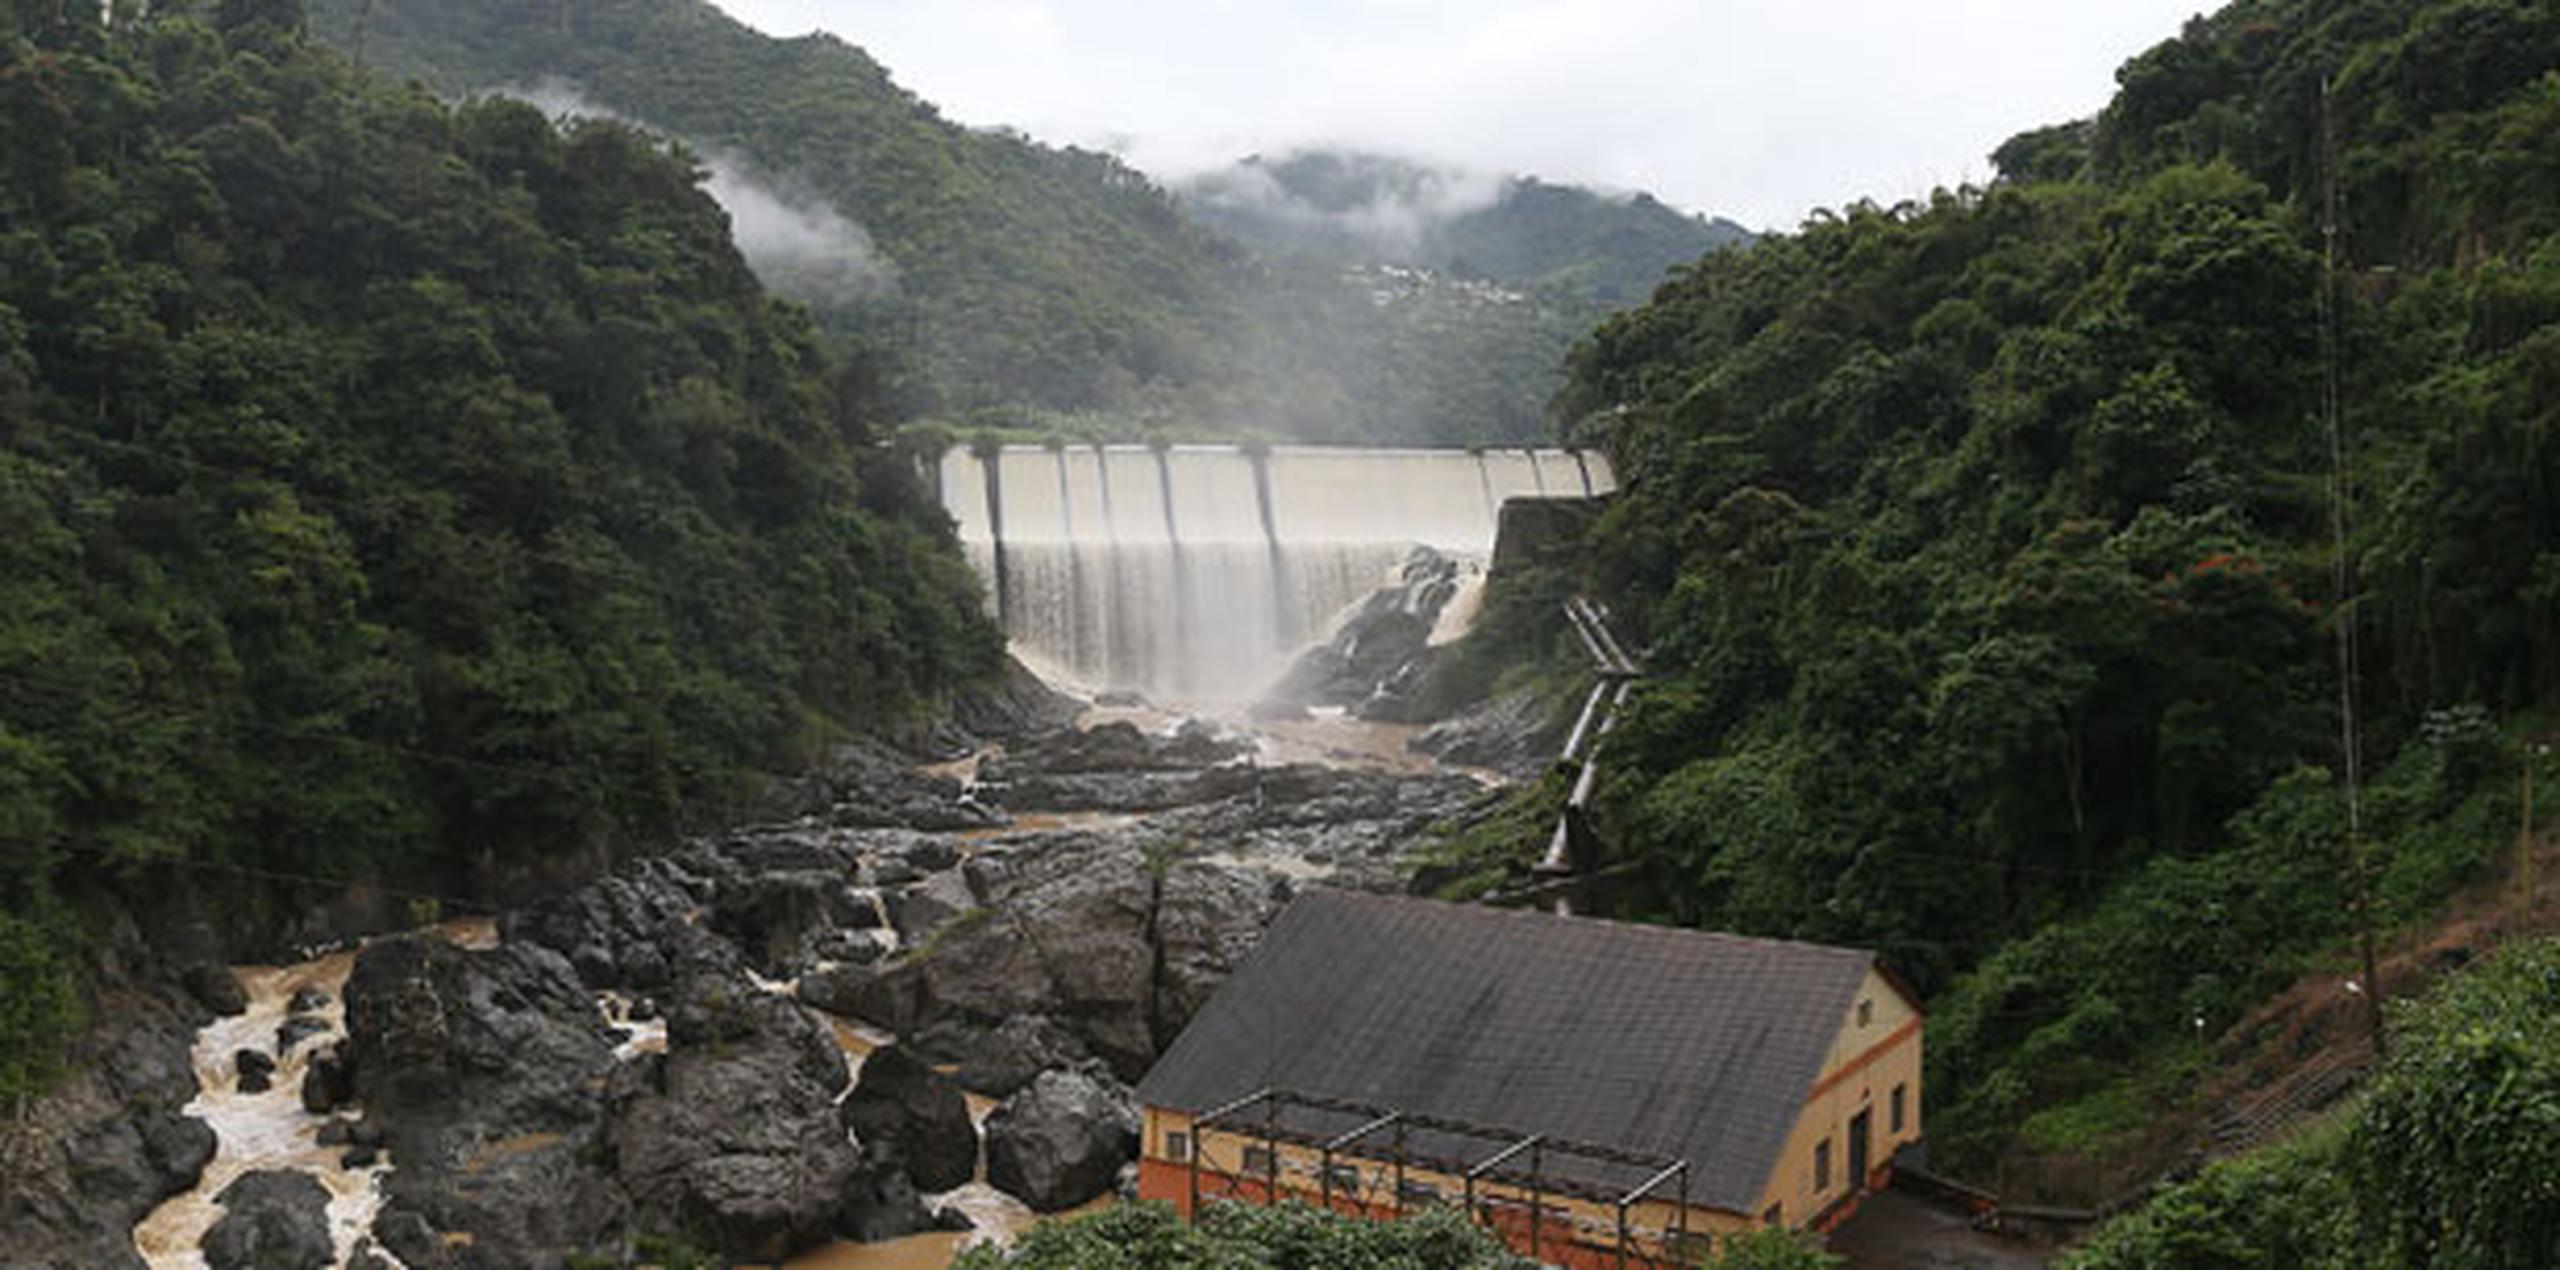 Las citadas represas fueron construidas a principios del 1900 y son por tanto dos de las más antiguas de Puerto Rico. (Archivo)